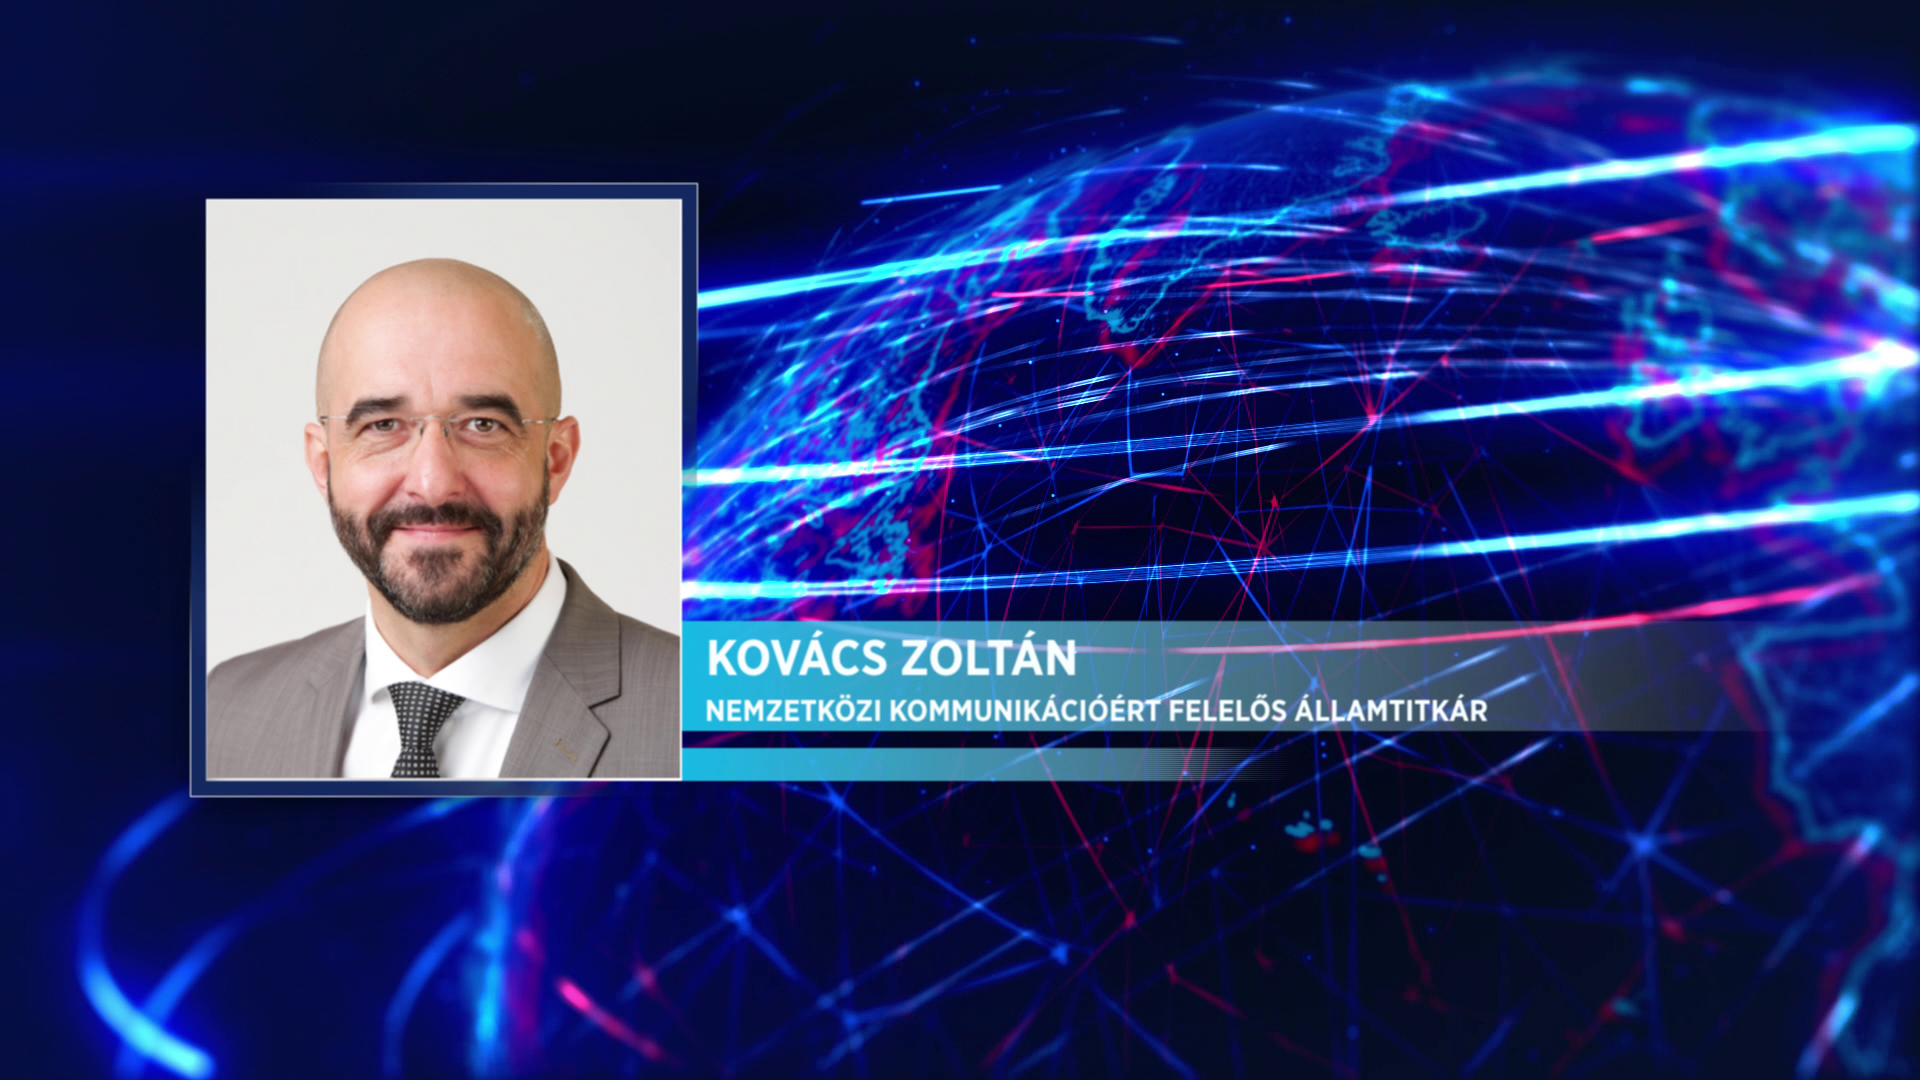 Kovács Zoltán: A nemzeti konzultáció az egyetértésről szól